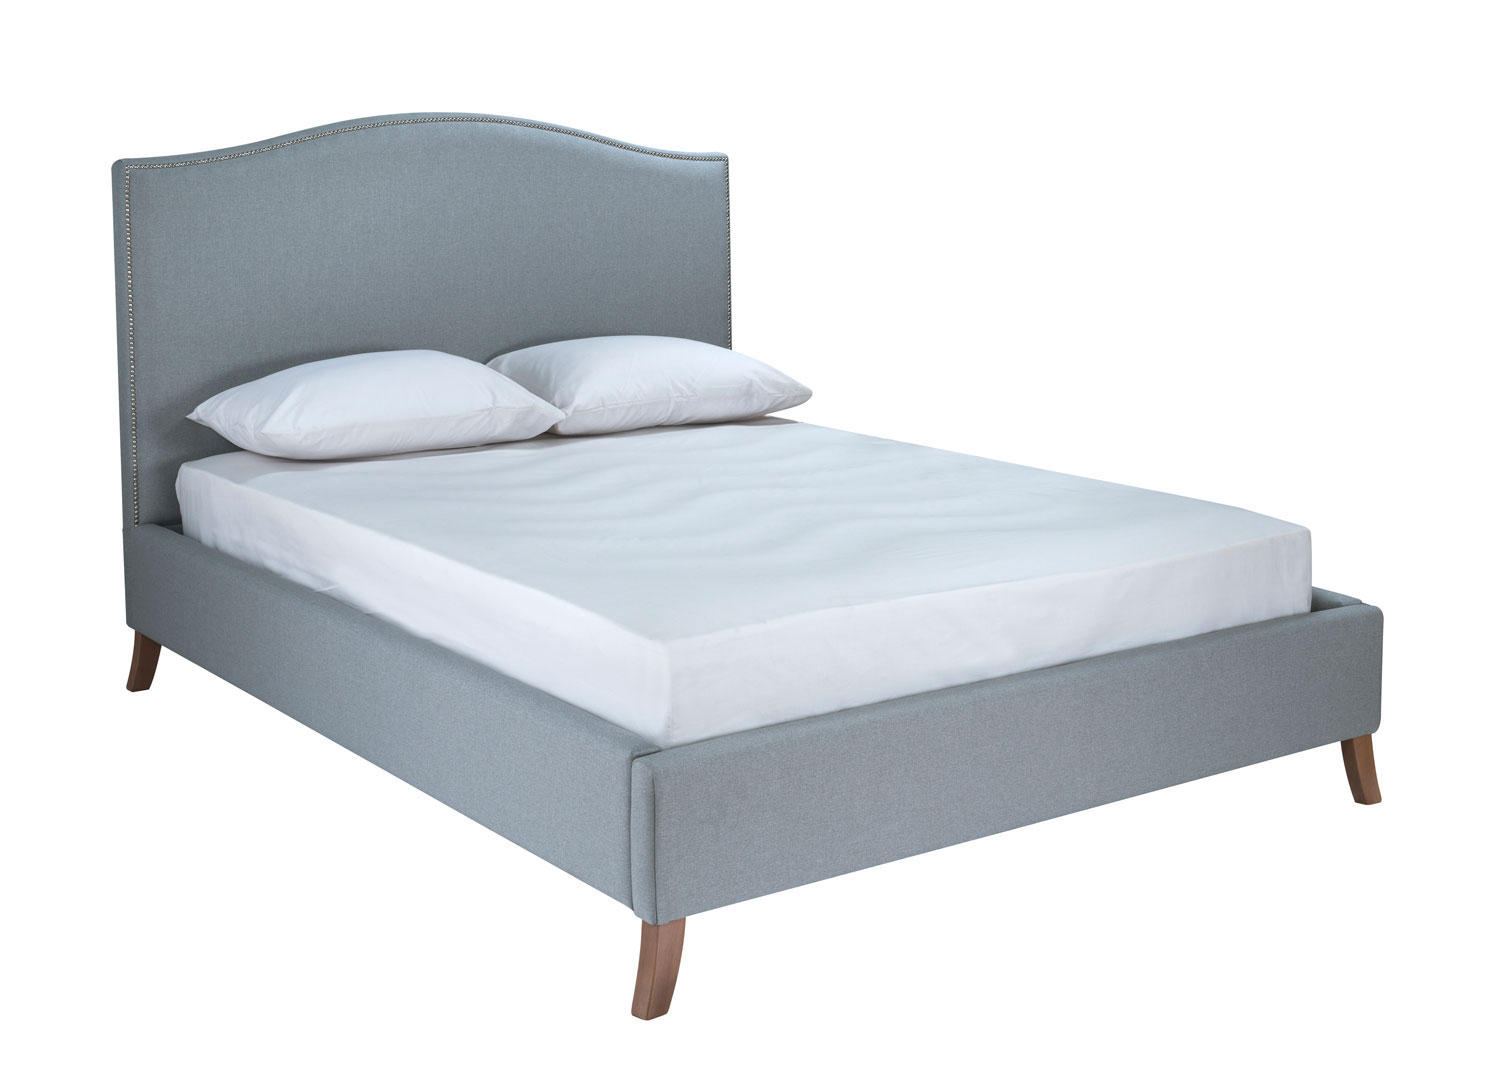 Grey bed - Boxgrove